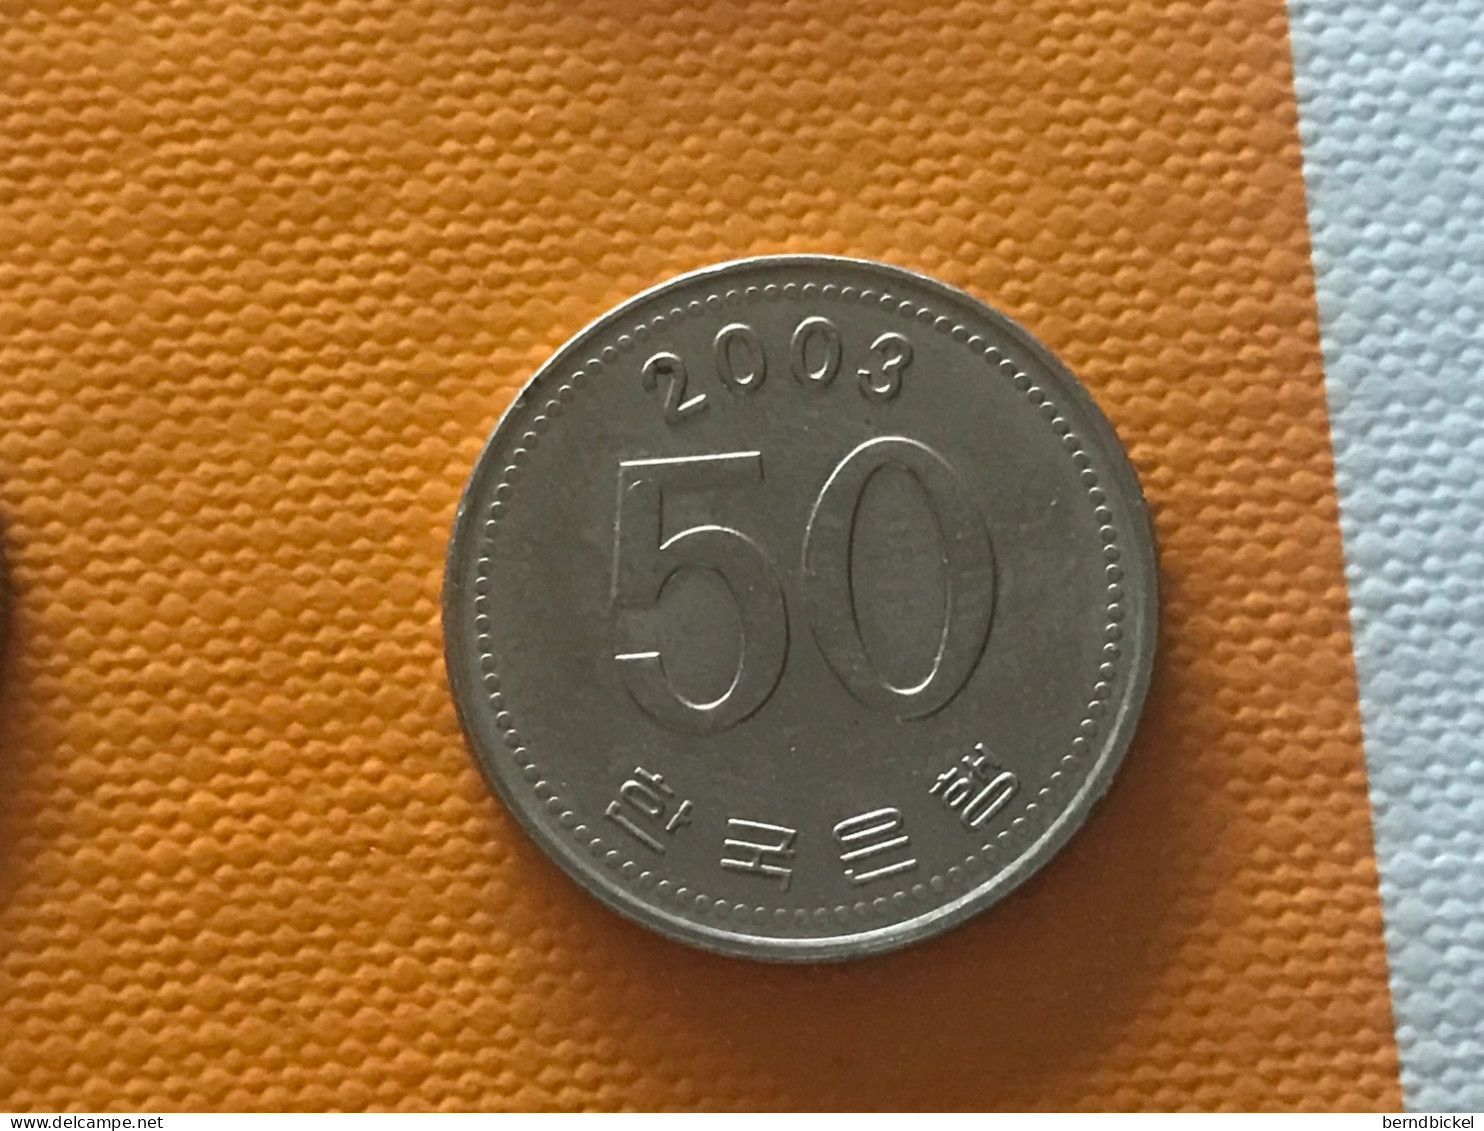 Münze Münzen Umlaufmünze Südkorea 50 Won 2003 - Korea (Süd-)